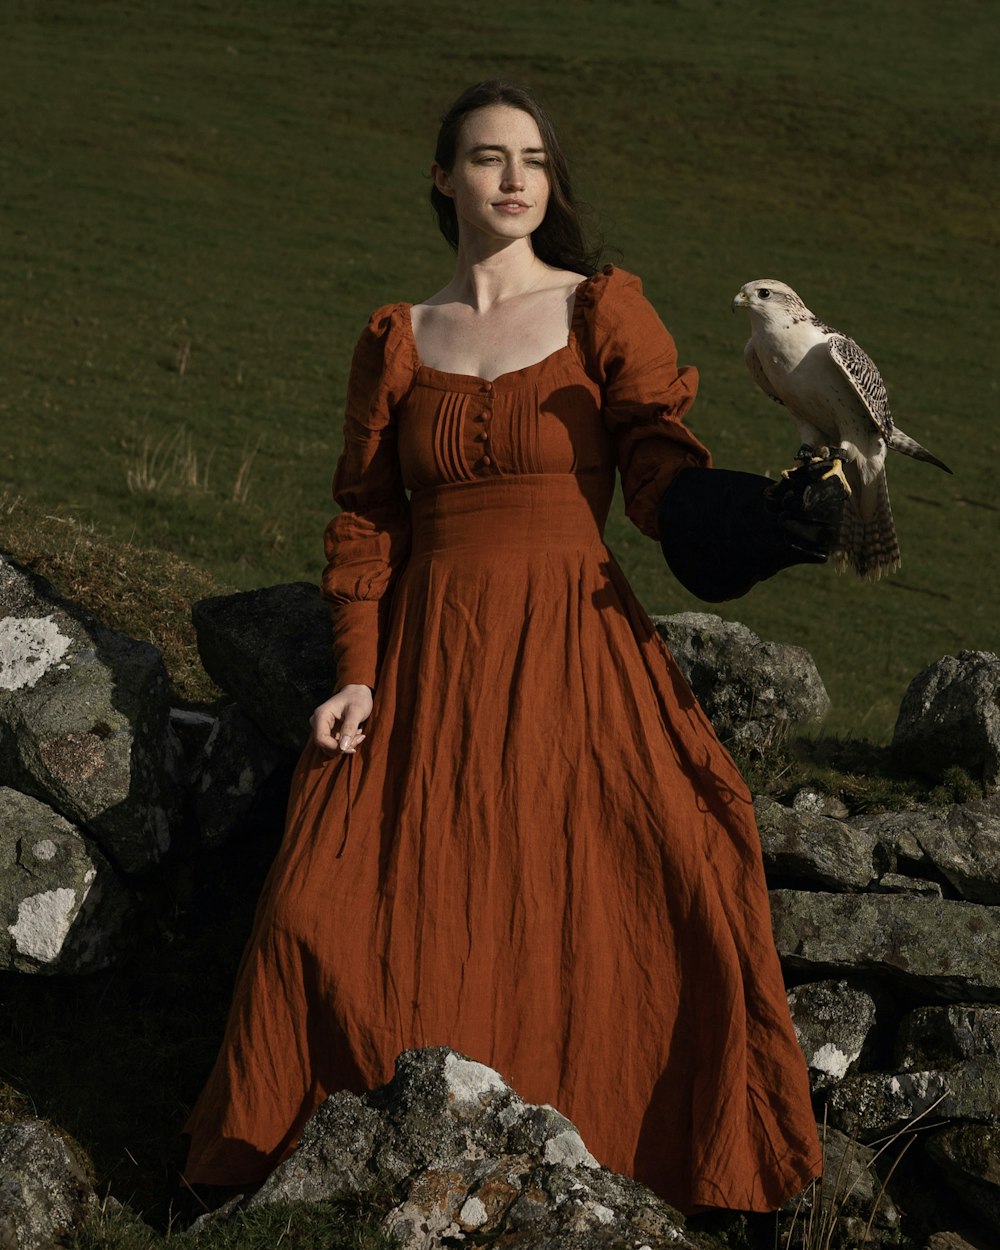 Eine Frau in einem orangefarbenen Kleid, die einen Vogel hält